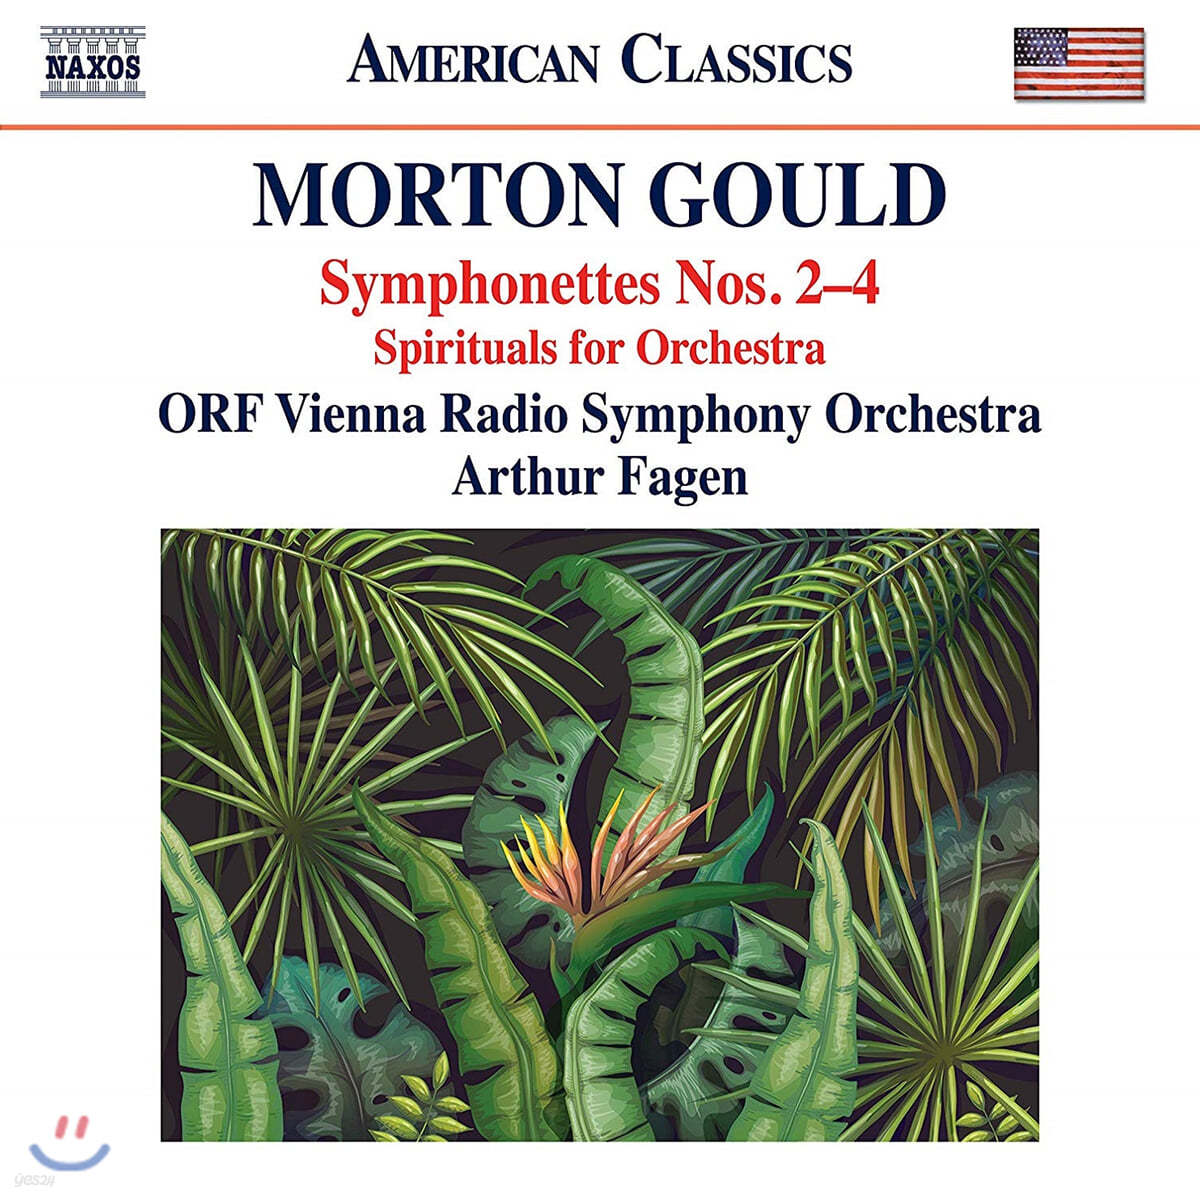 Arthur Fagan 모턴 굴드: 심포넷 2-4번, 오케스트라를 위한 영가 (Morton Gould: Symphonettes Nos. 2-4, Spirituals for Orchestra)